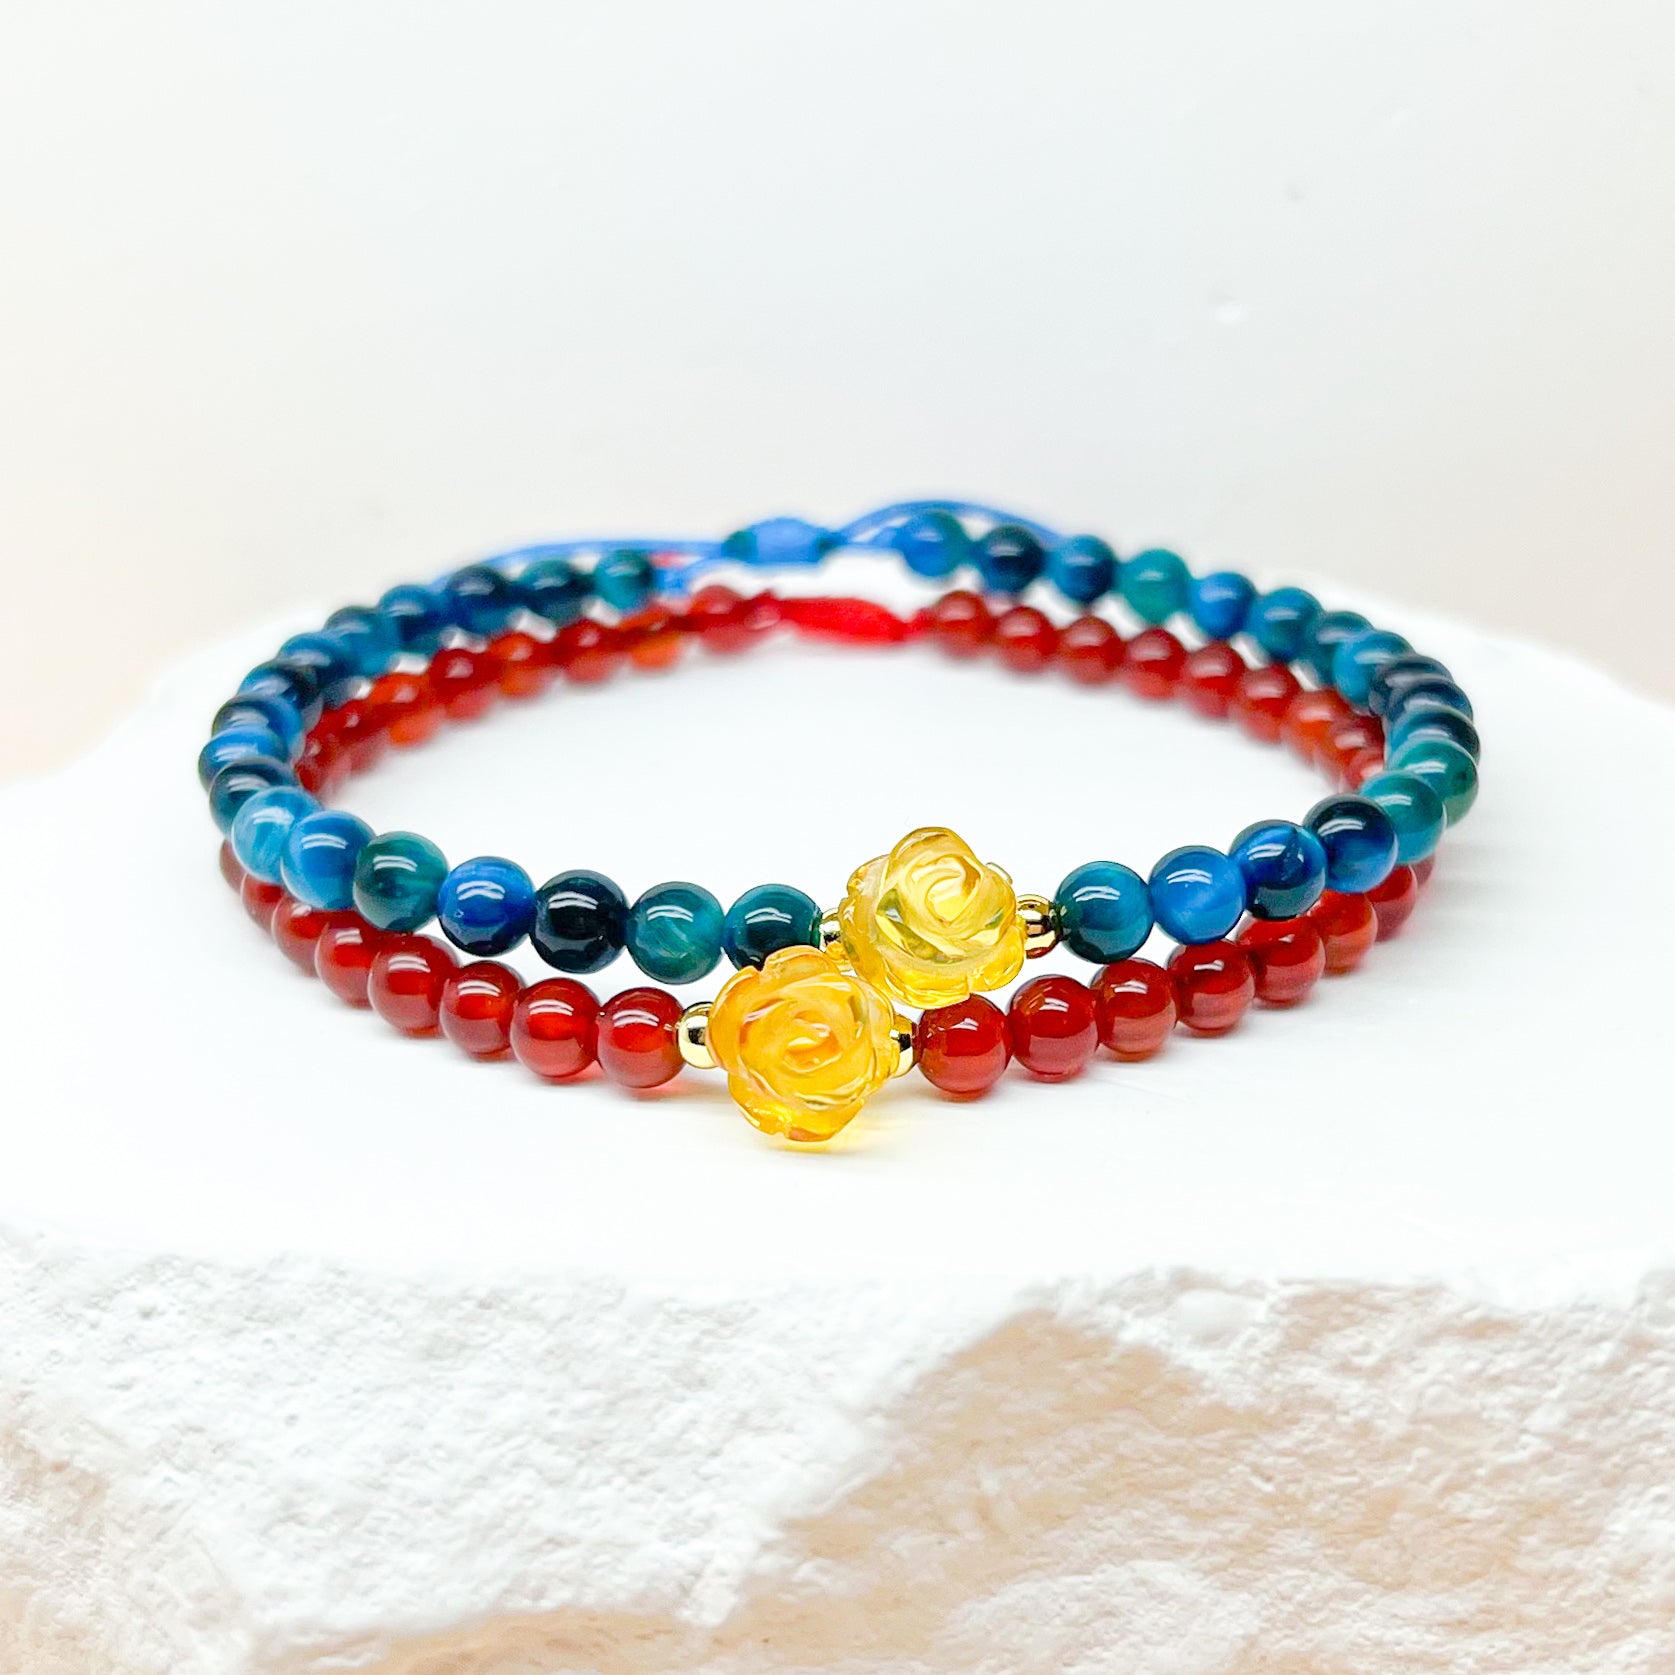 Citrine rose, red agate and blue tiger eye bracelet